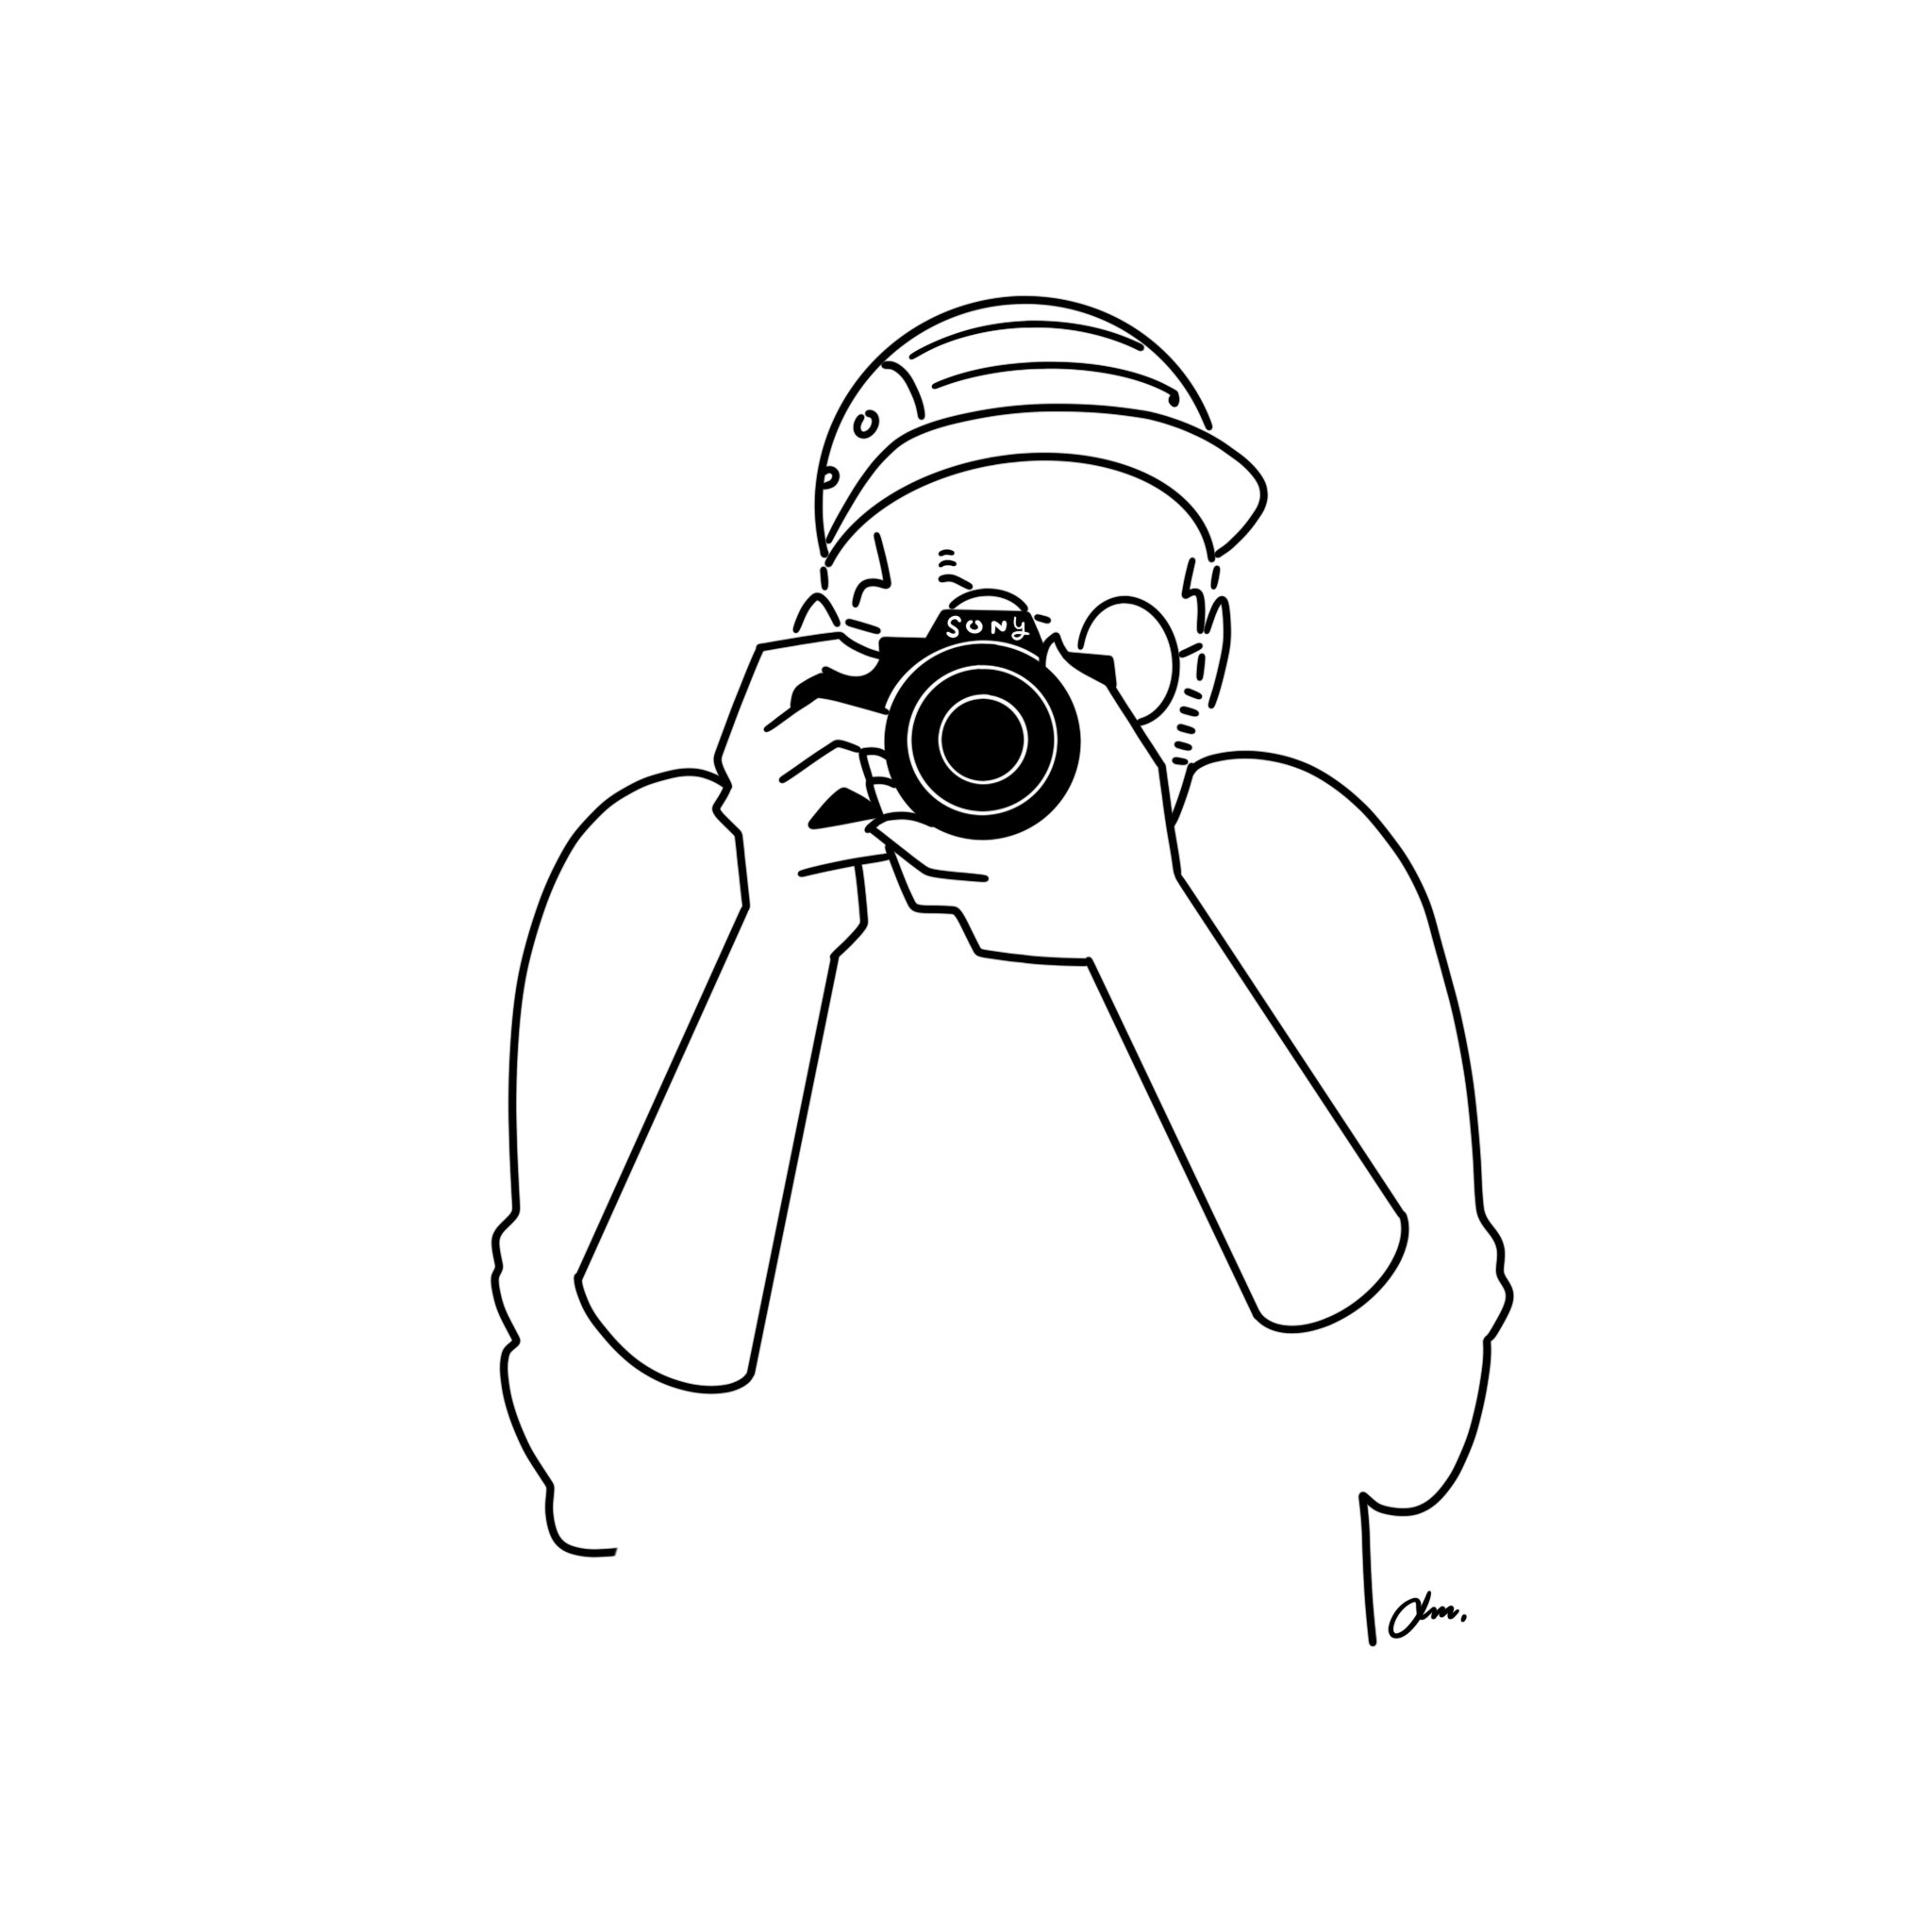 Am アム 在 Twitter 上 カメラ持ち出してお出かけしたい Illust Illustration Illustrator Artwork Lineart イラスト イラストレーター ラインアート デザイン 落書き 挿絵 シンプルイラスト モノクロイラスト Sony ii iii カメラ女子 カメラ